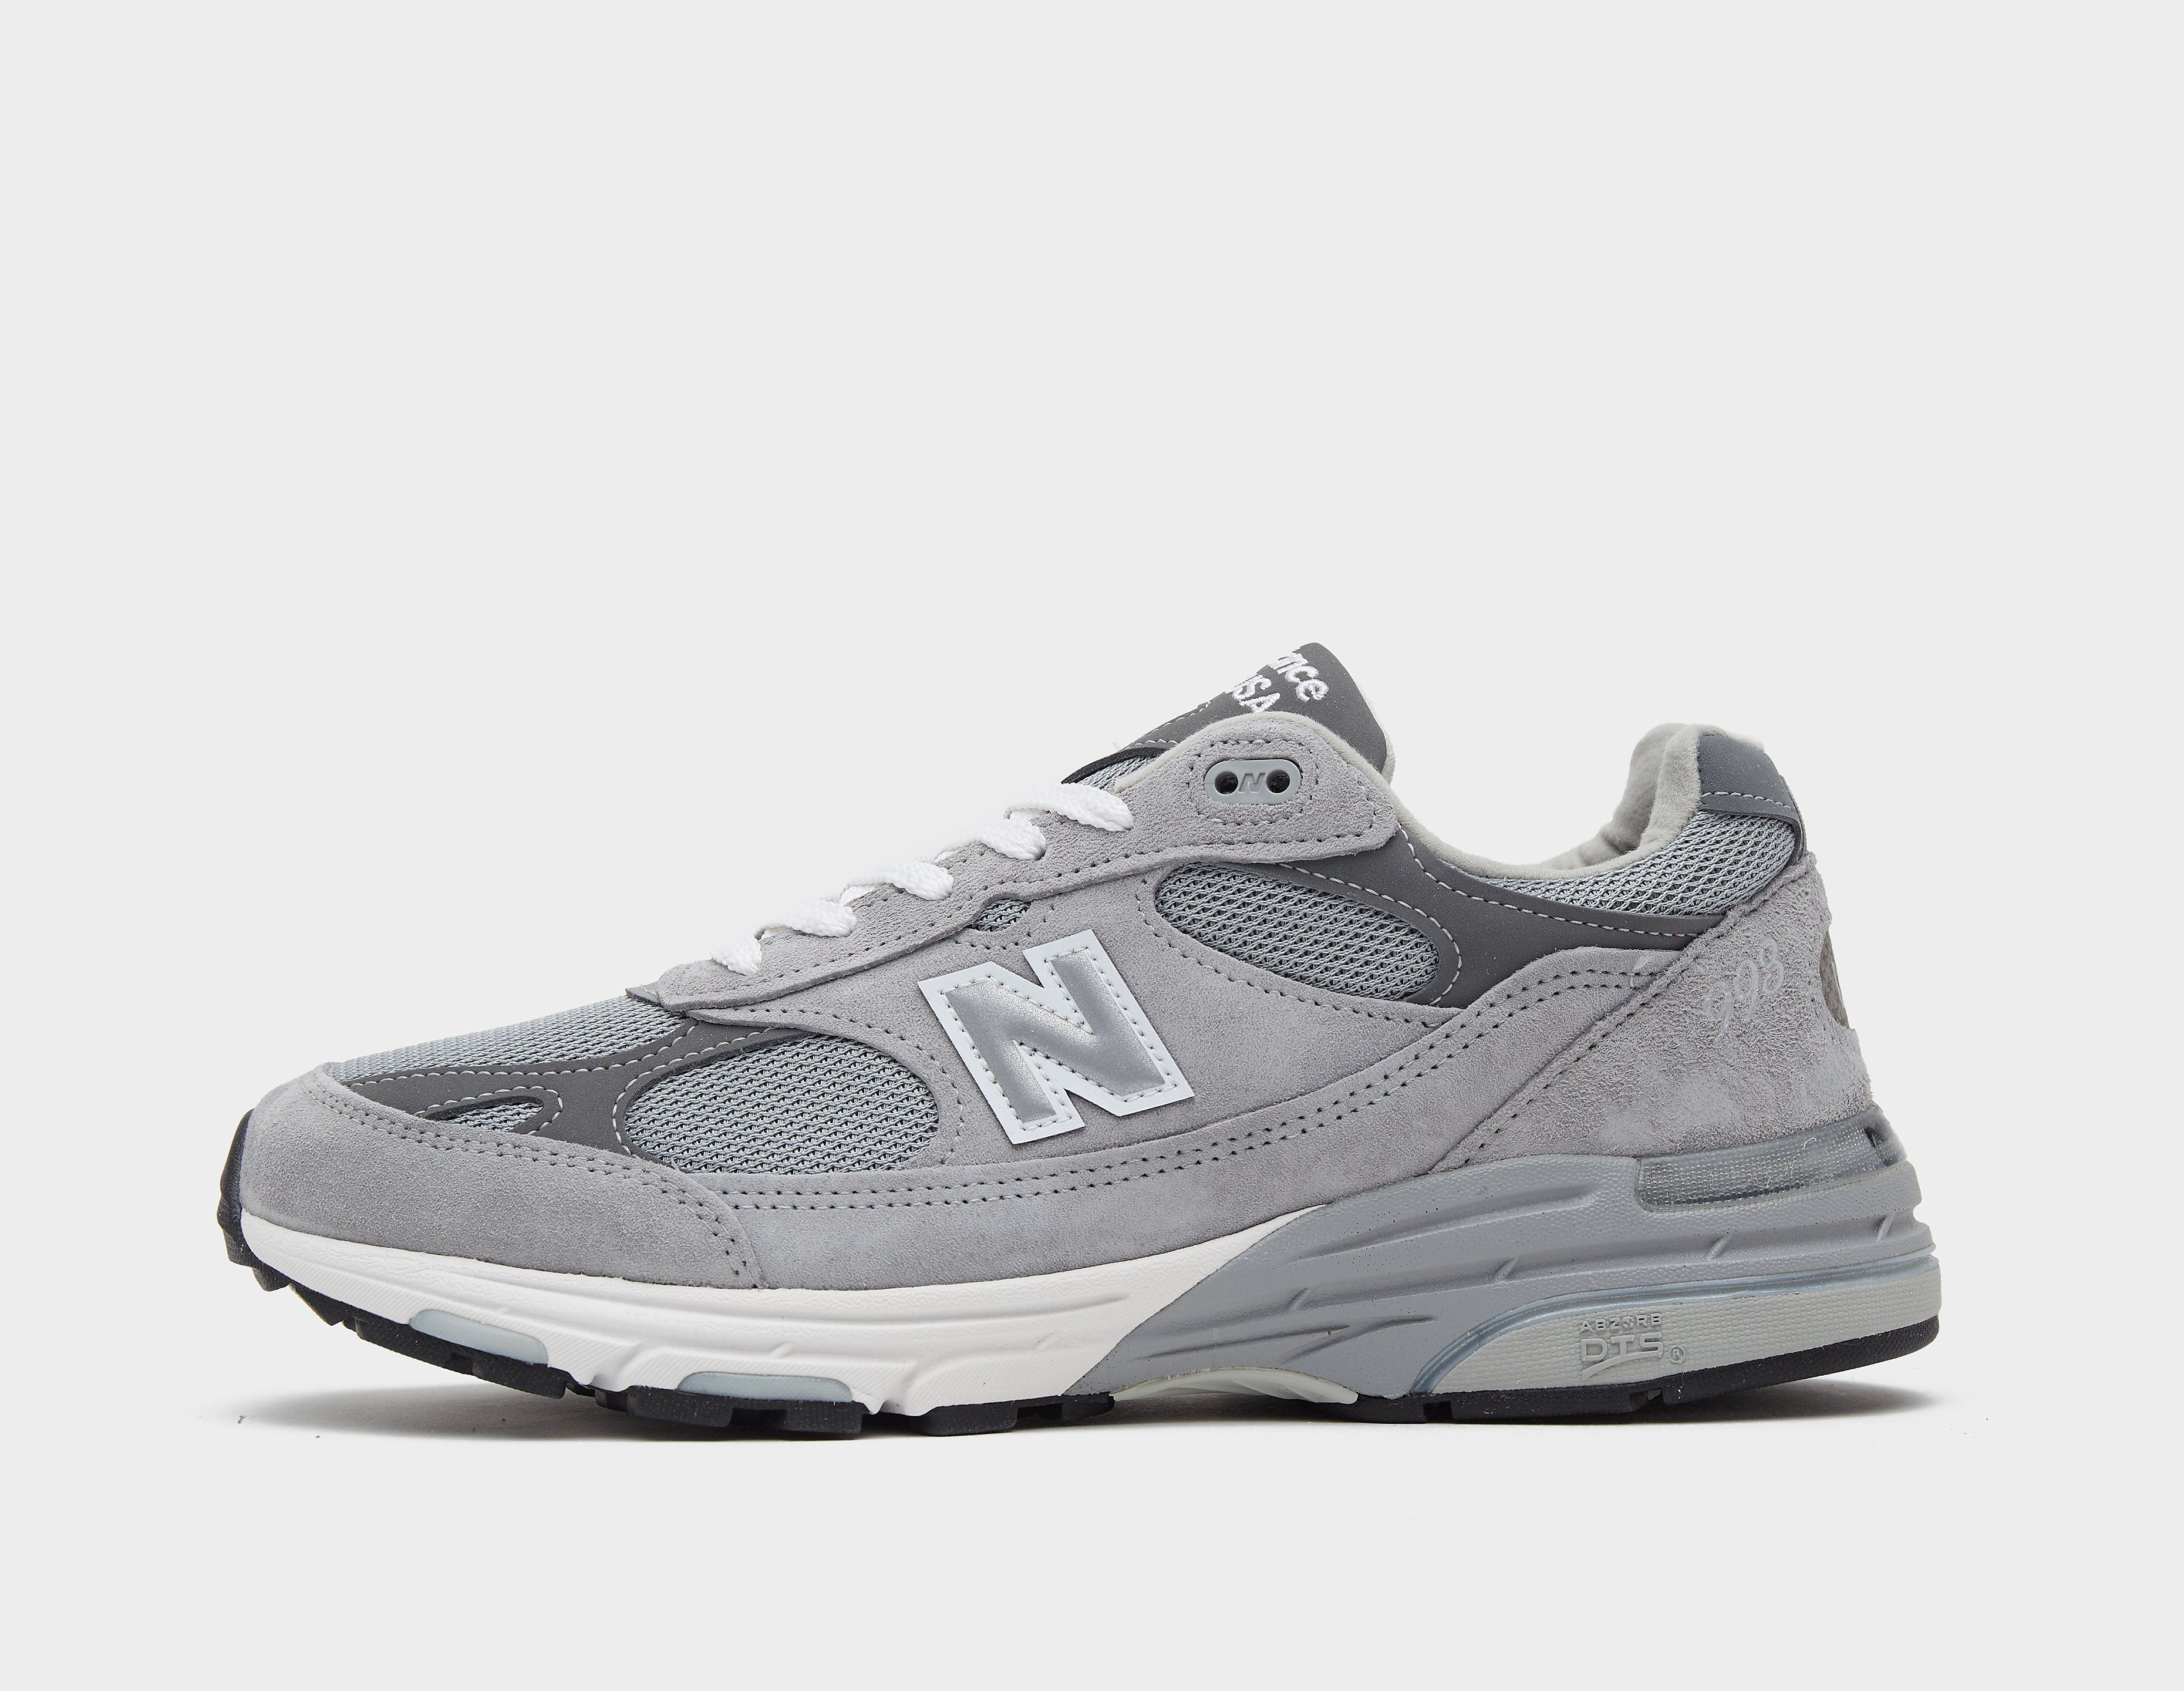 New Balance 993 Made in USA, Grey